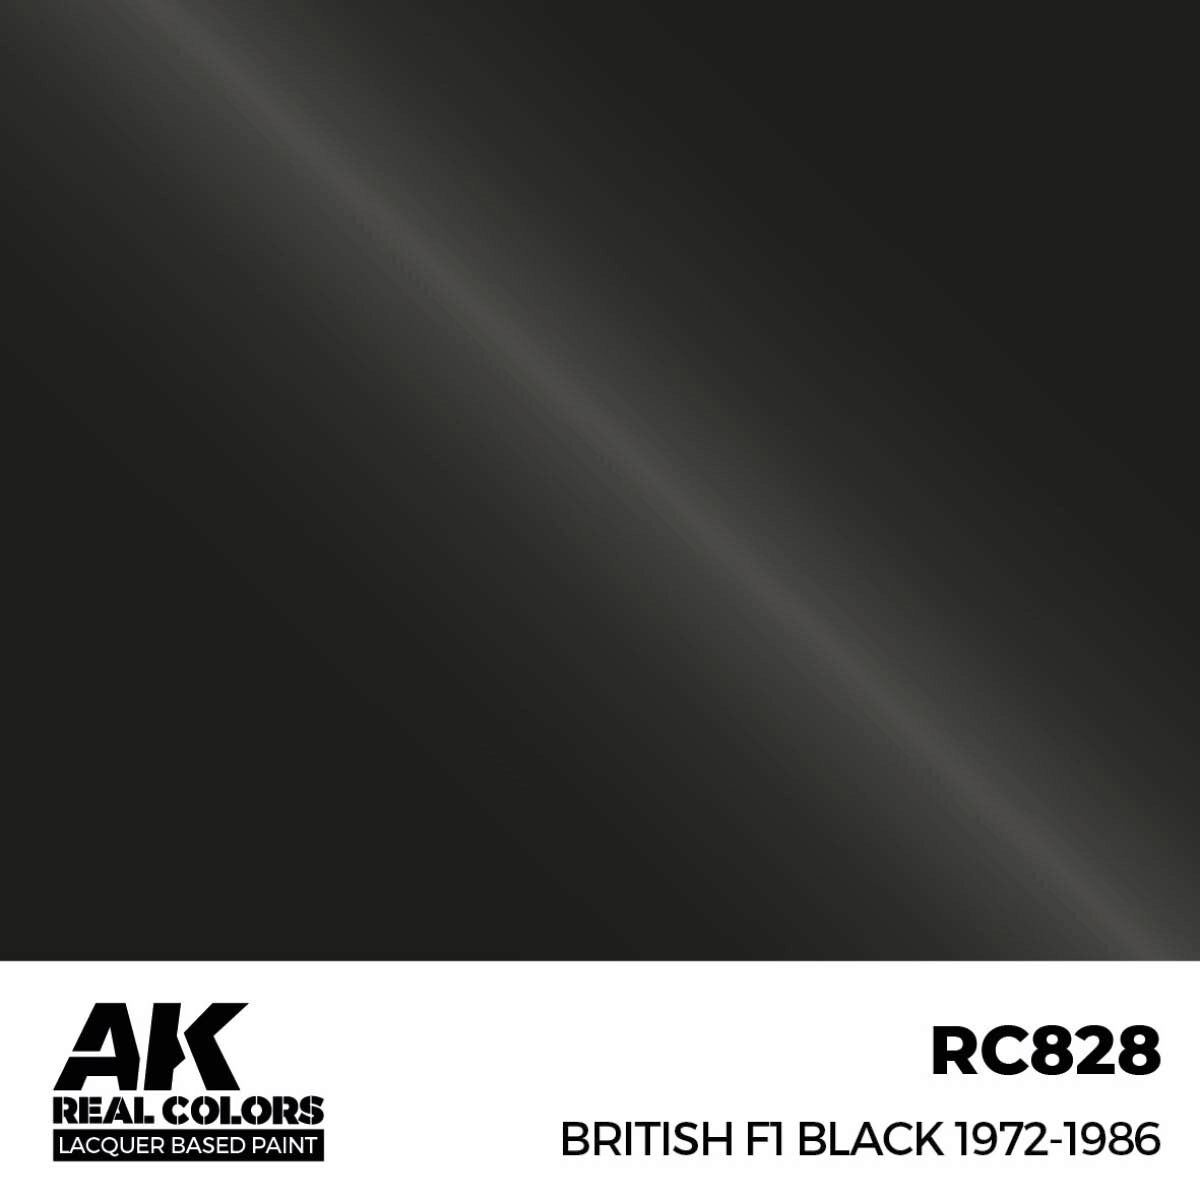 AK RC828 Real Colors British F1 Black 1972-1986 17 ml.